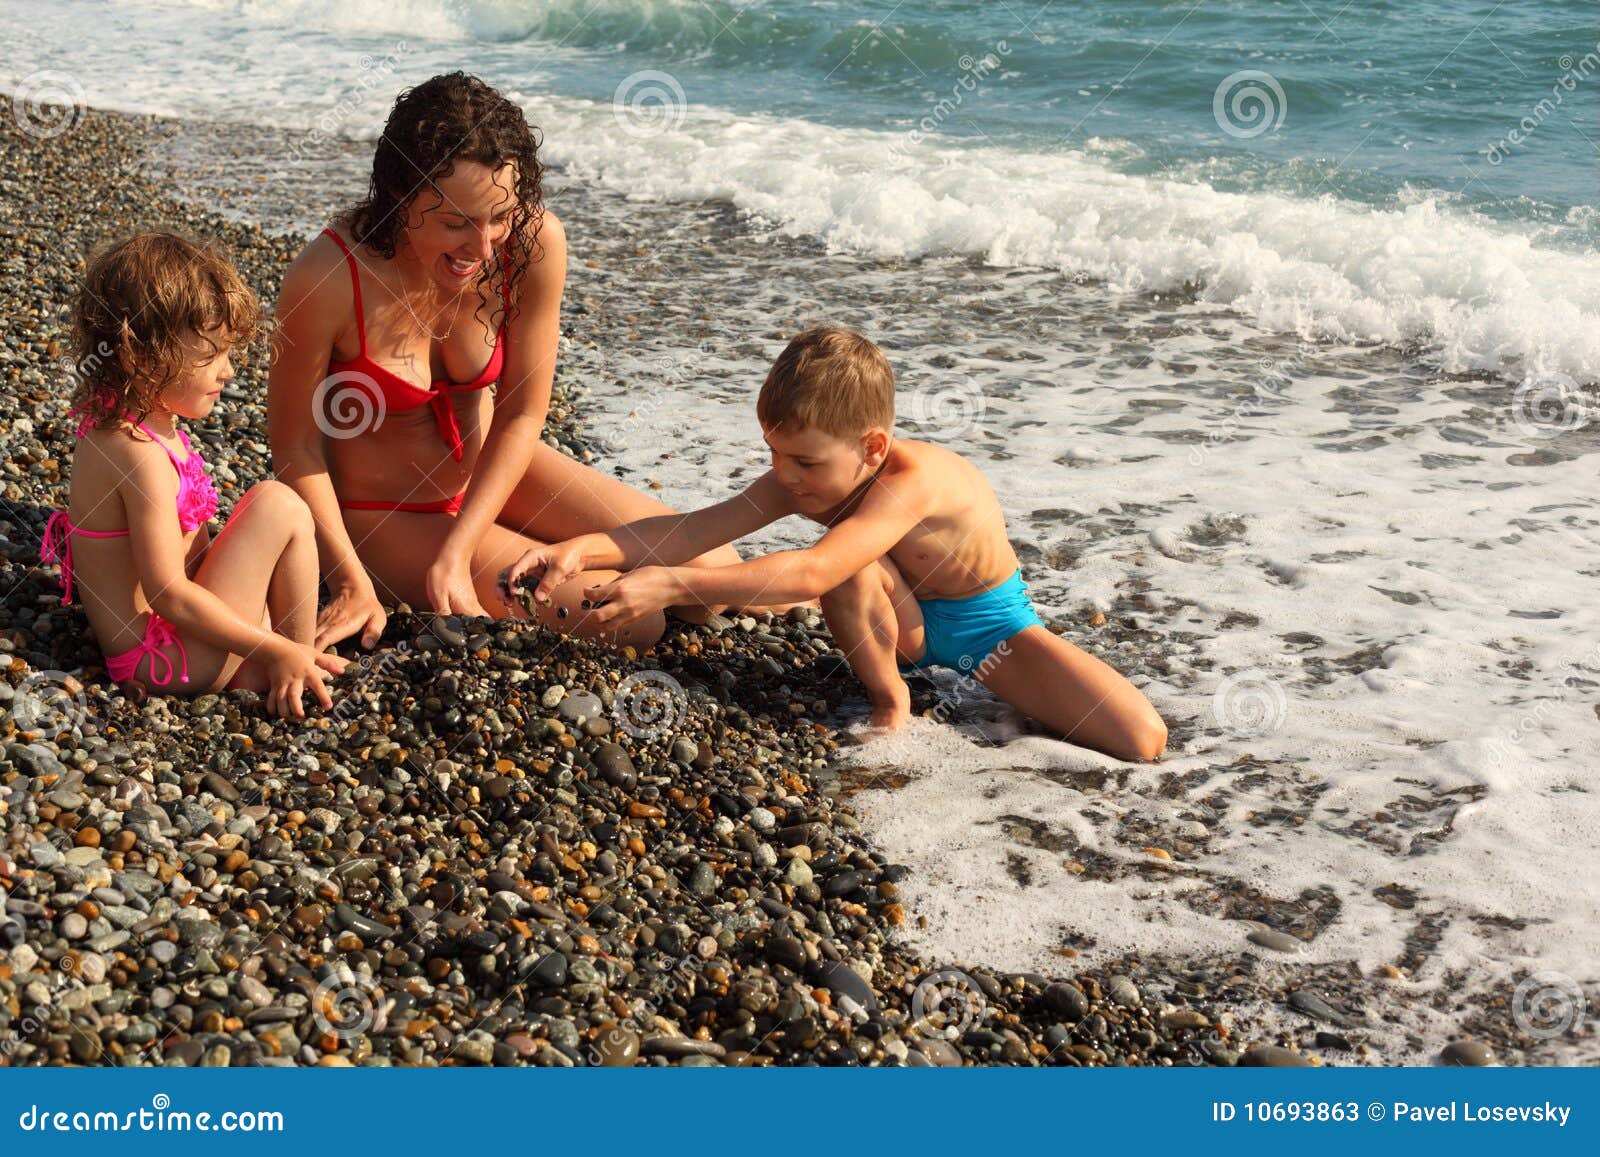 нудиский пляж с голыми детьми фото 57